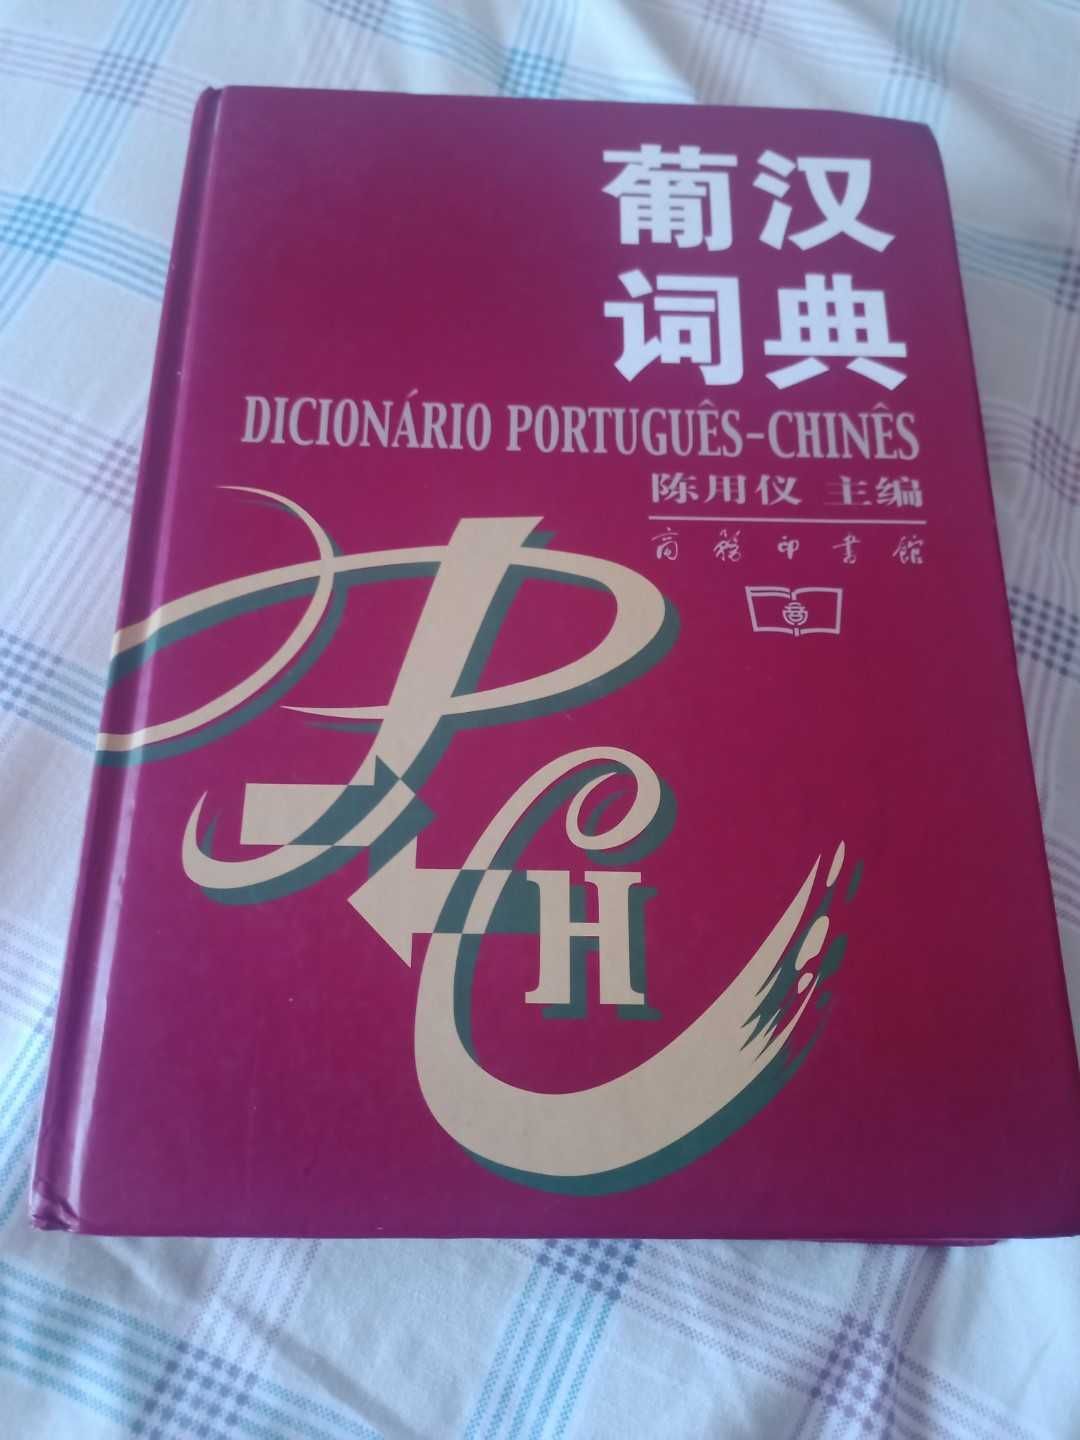 Dicionário Português-Chinês